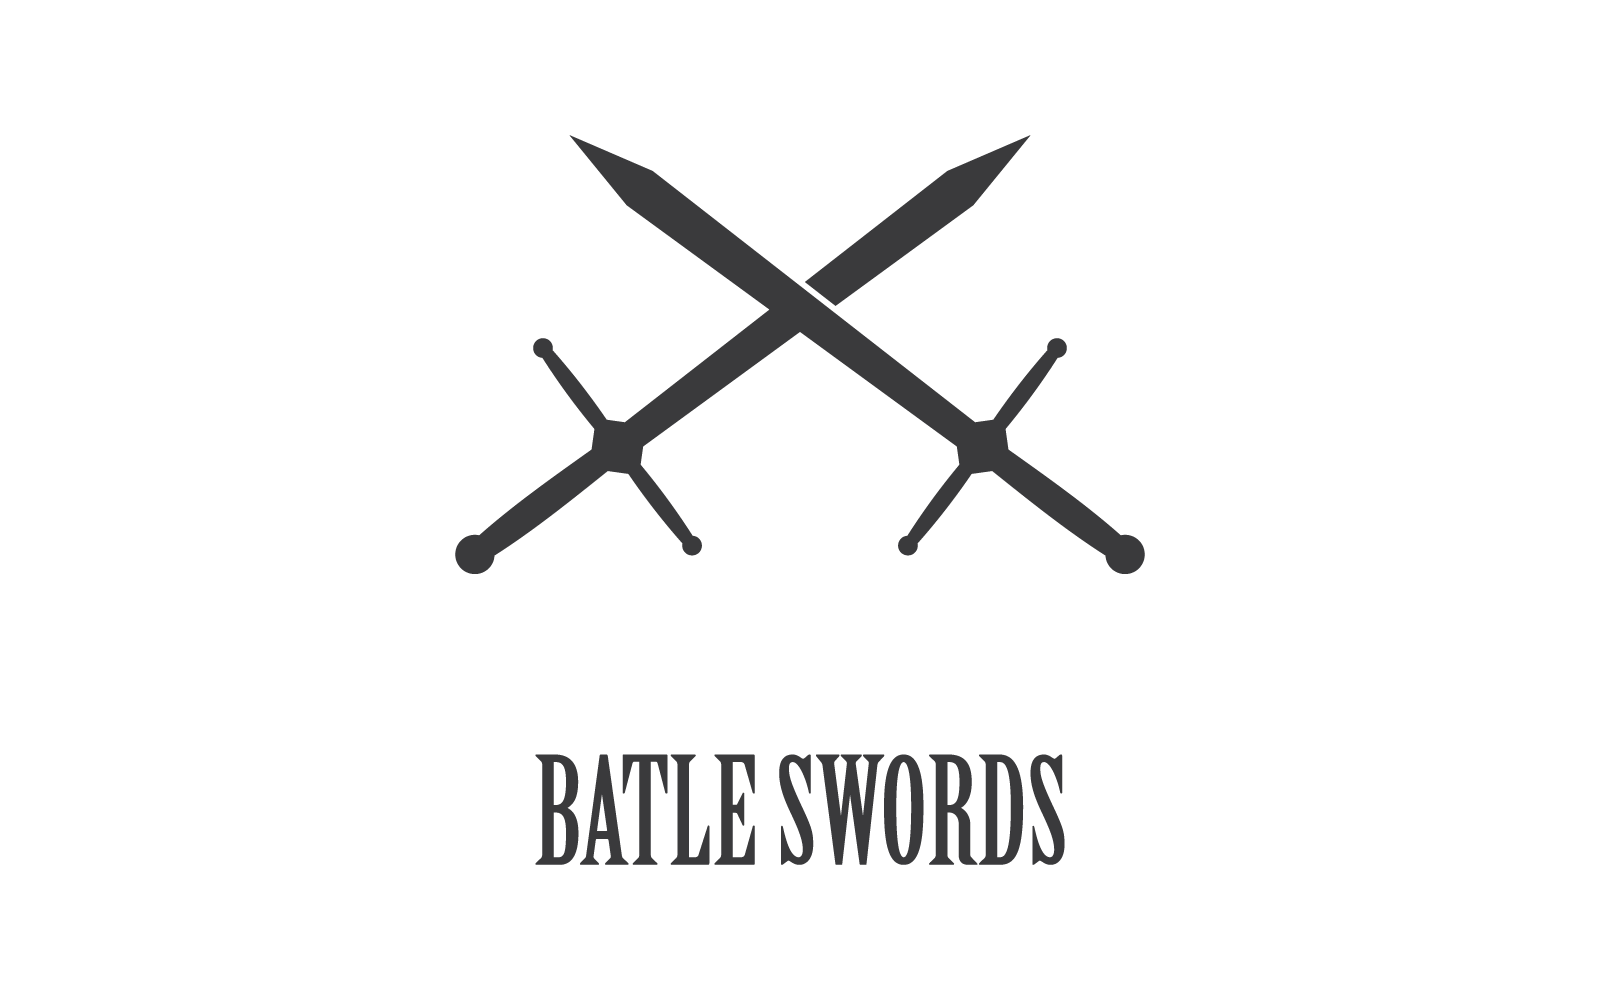 Kılıç illüstrasyon logo vektör düz tasarımı